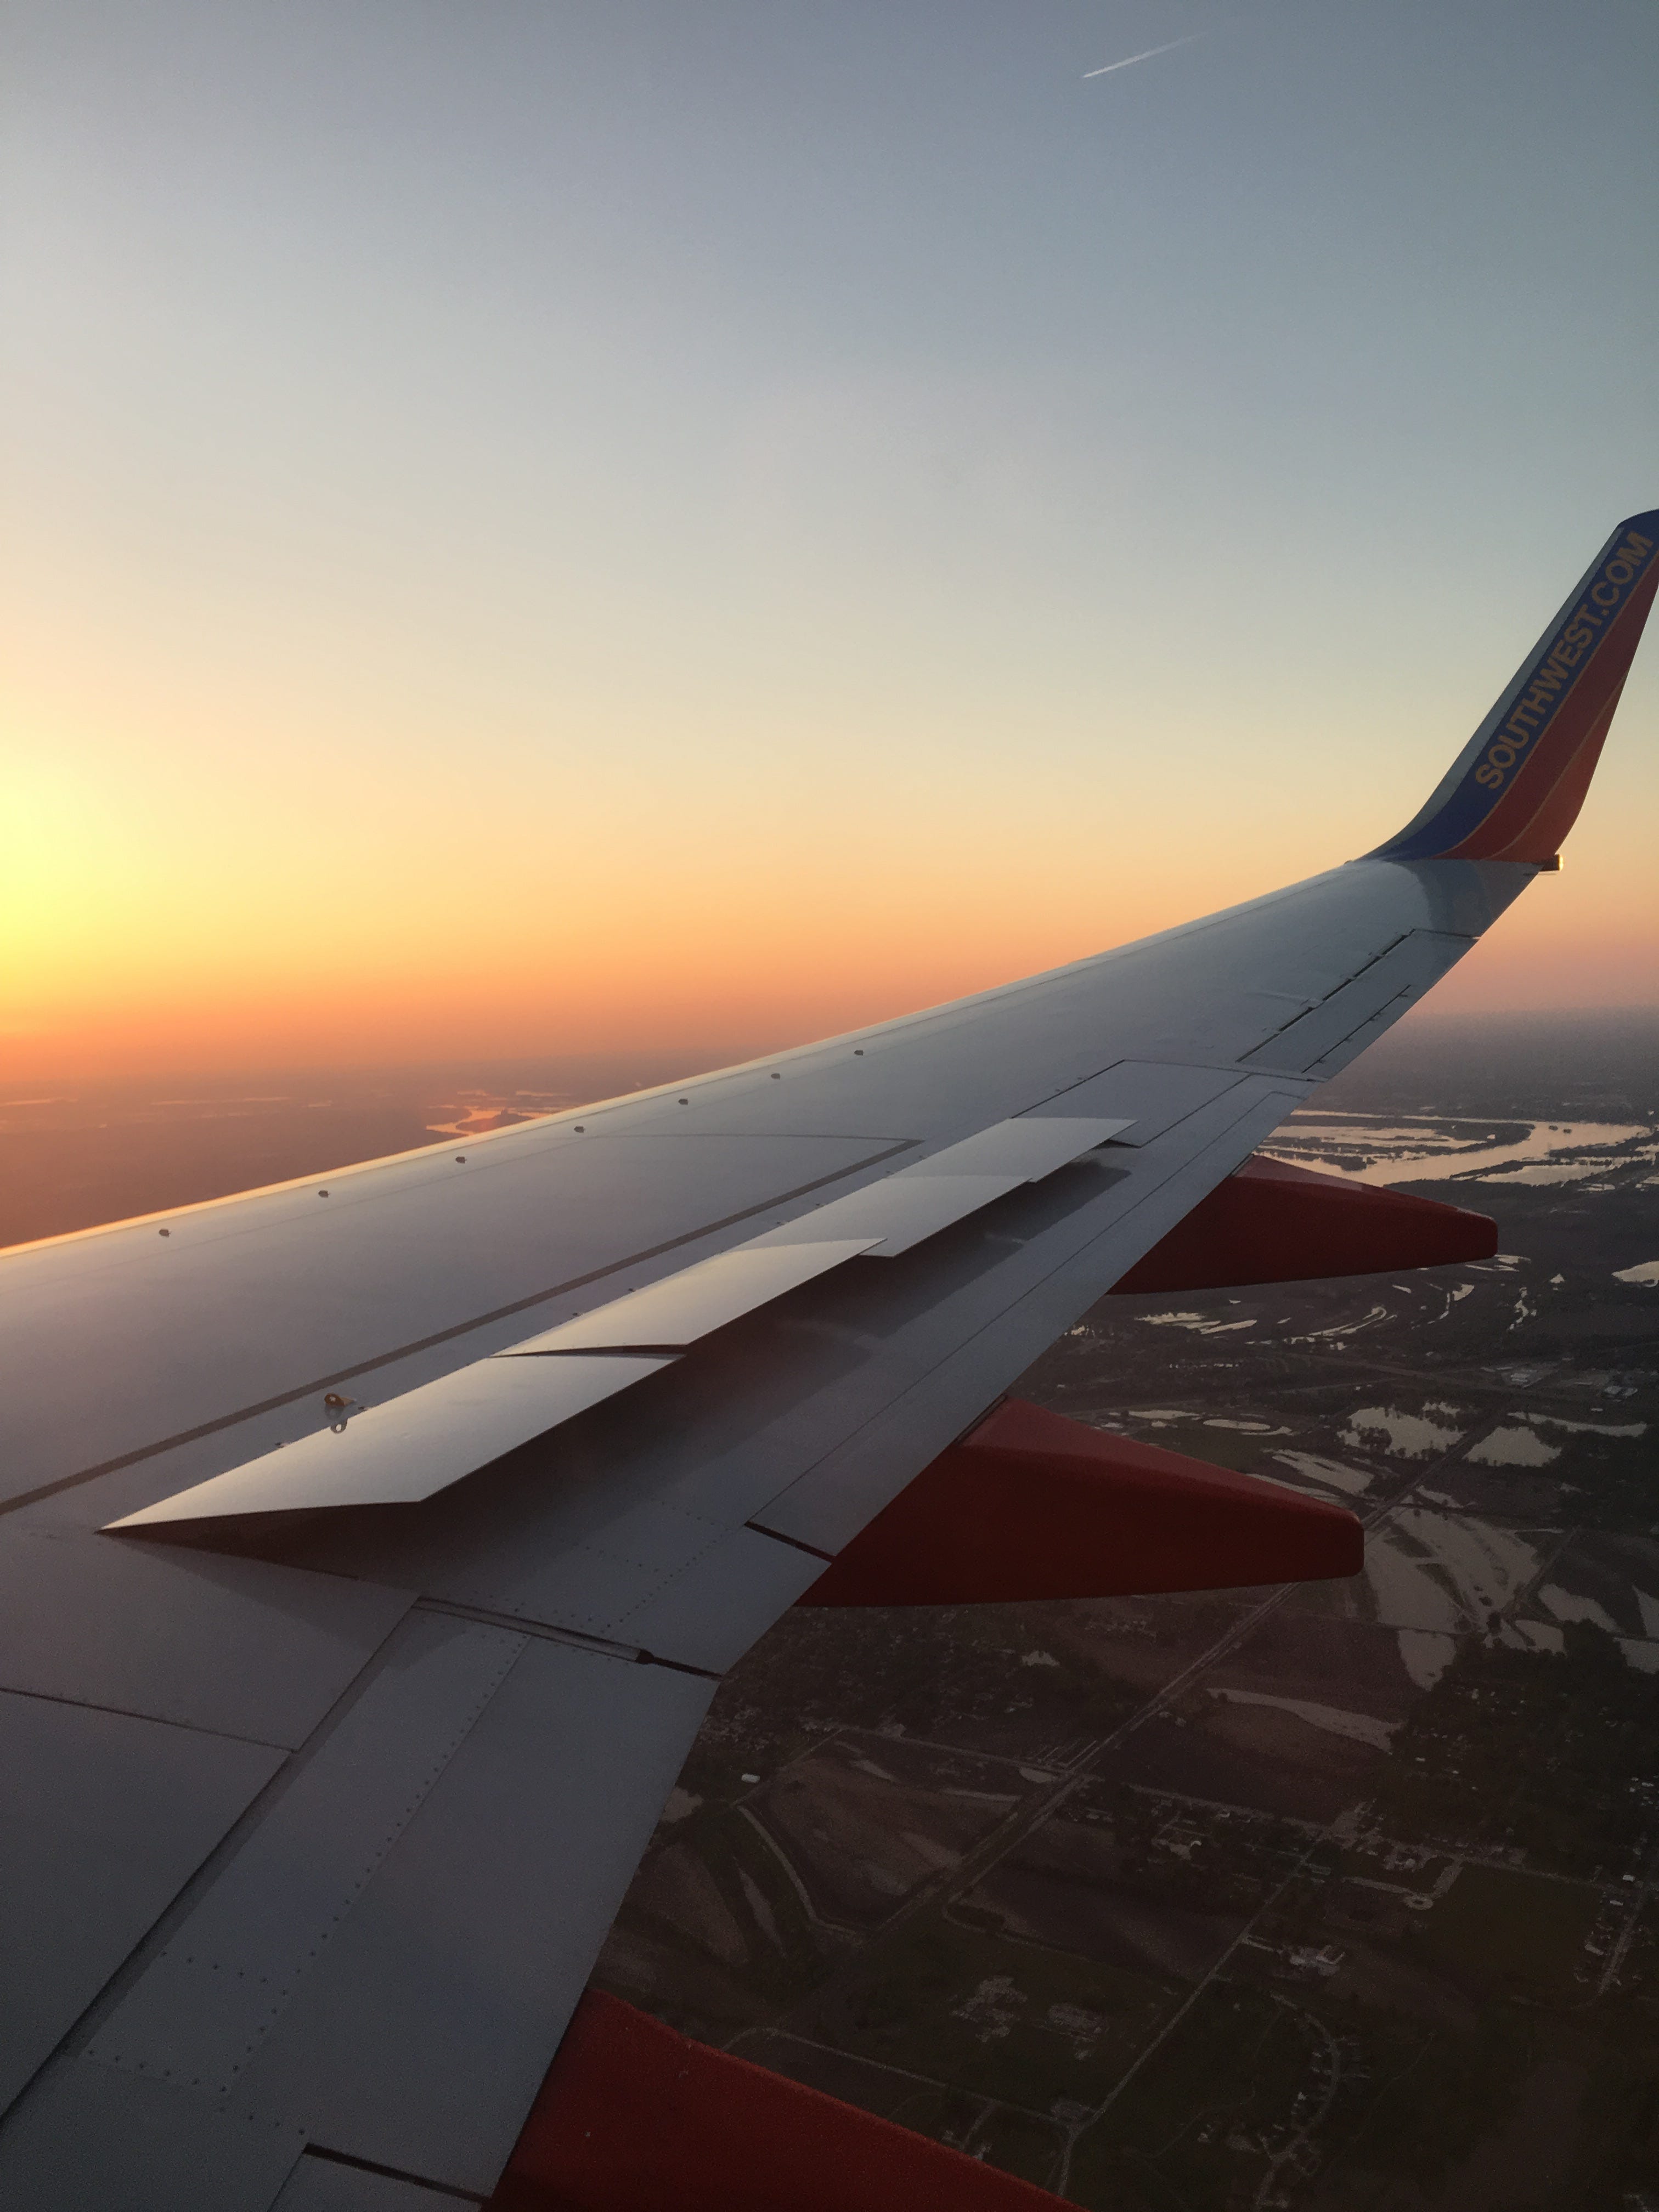 Kalifornien-Sonnenuntergang vom Fenster des Flugzeugs.